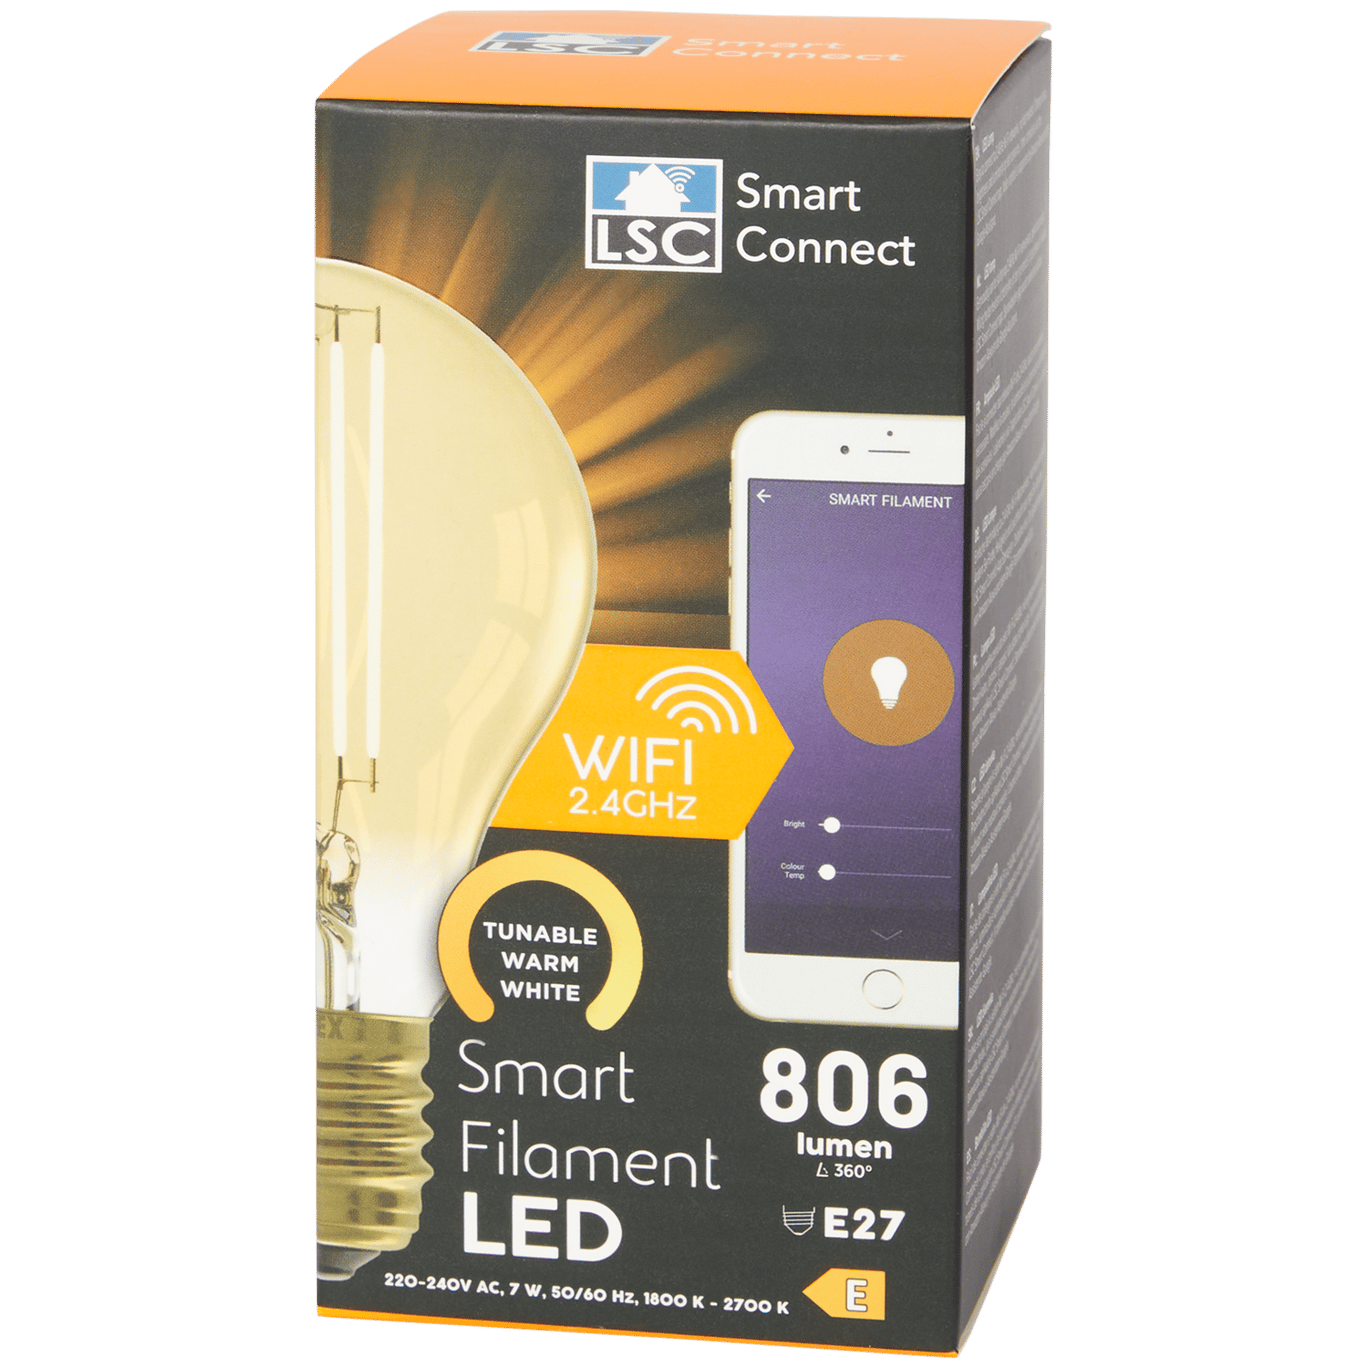 overschot strelen Spoedig LSC Smart Connect slimme filament-ledlamp | Action.com